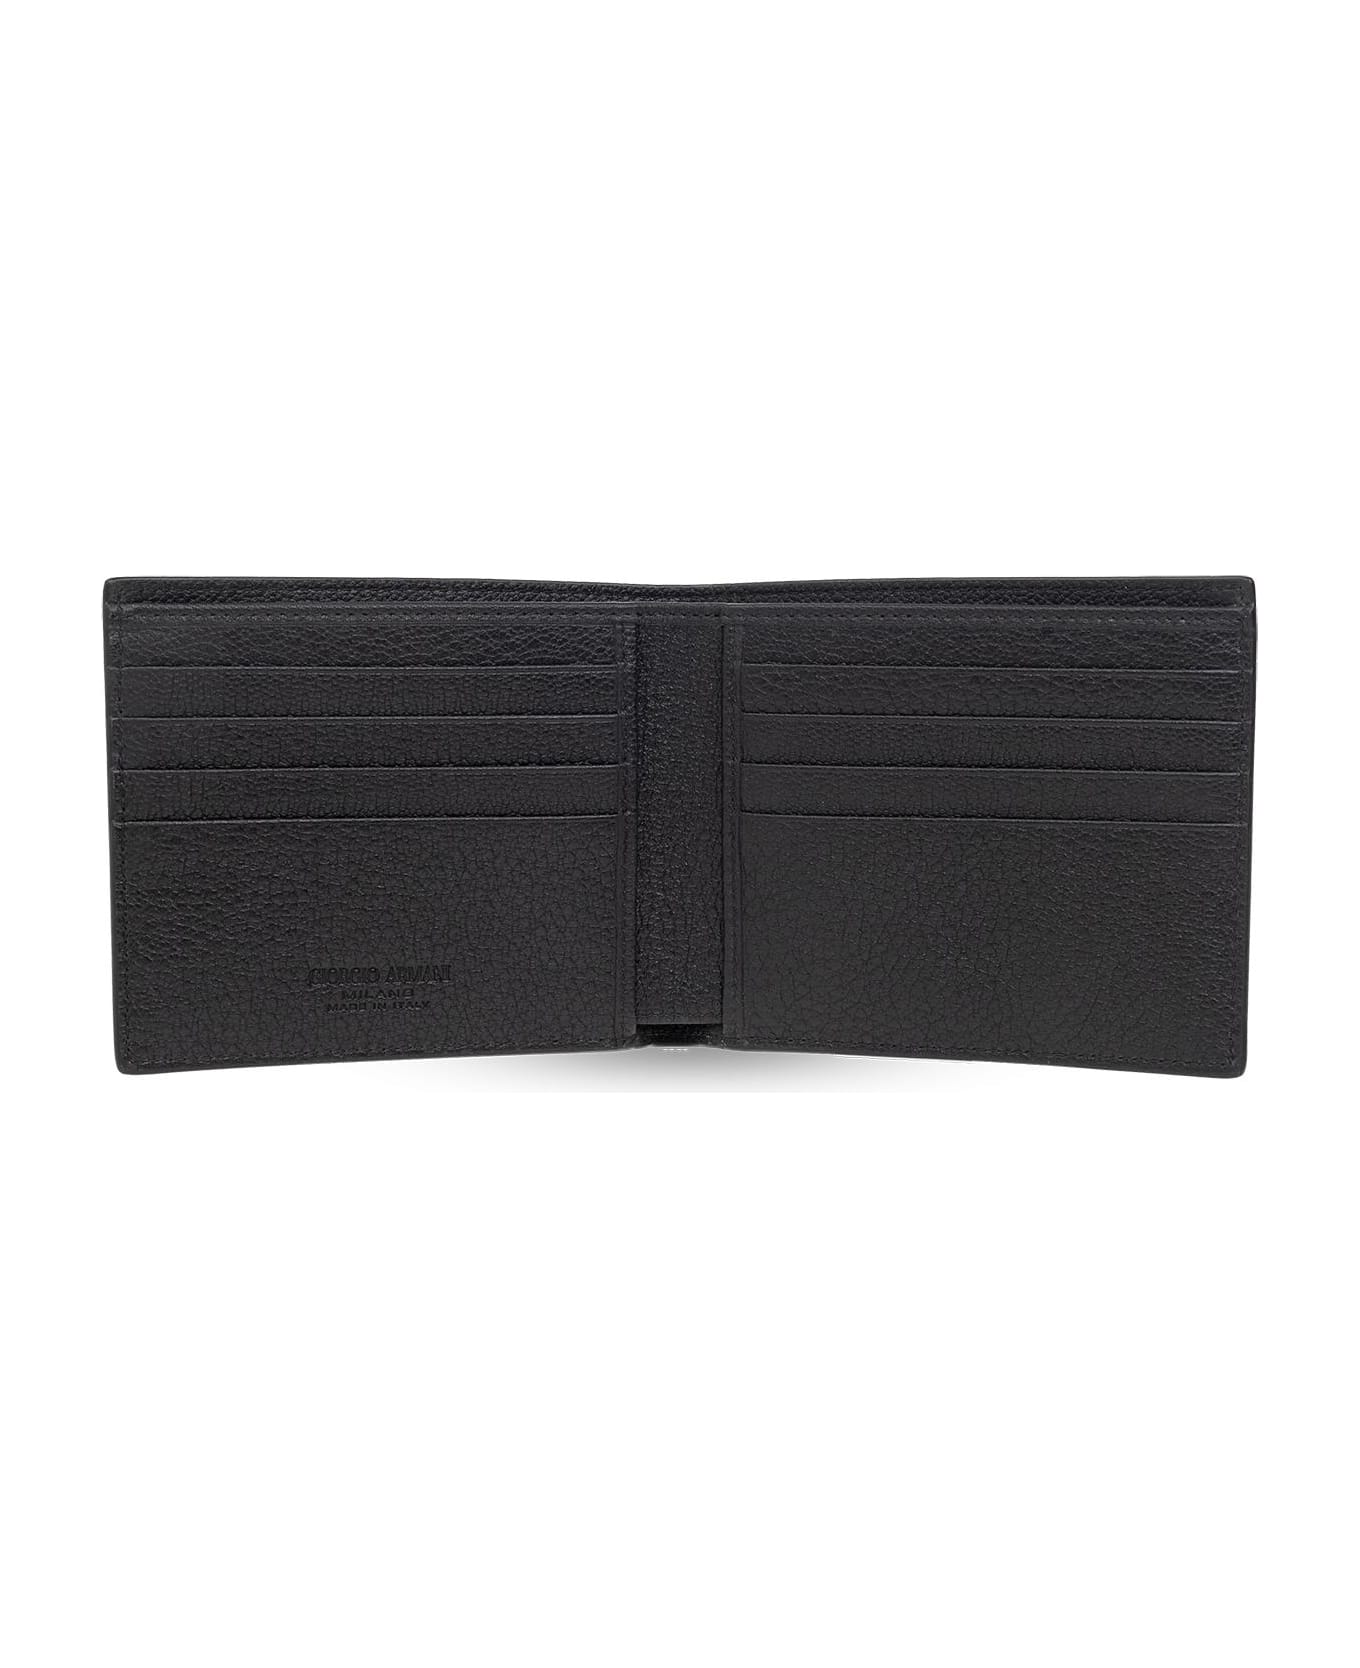 Giorgio Armani Leather Wallet - Nero 財布